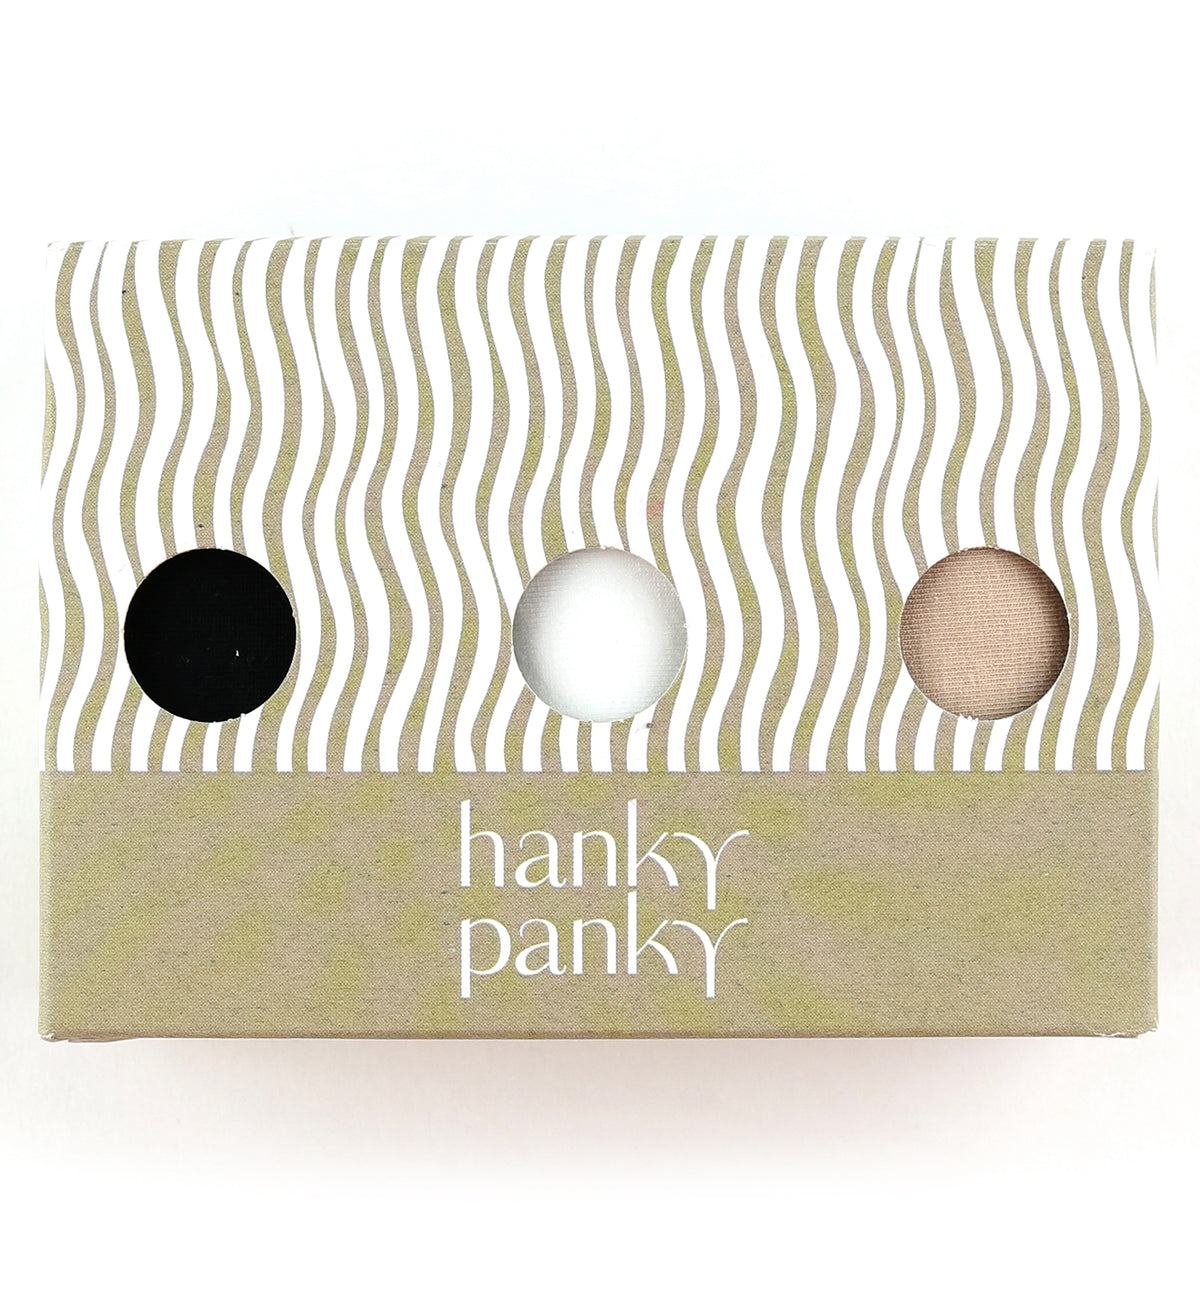 Hanky Panky 3-PACK Cotton Low Rise Thong (8915813PK),Black/White/Chai - Black/White/Chai,One Size